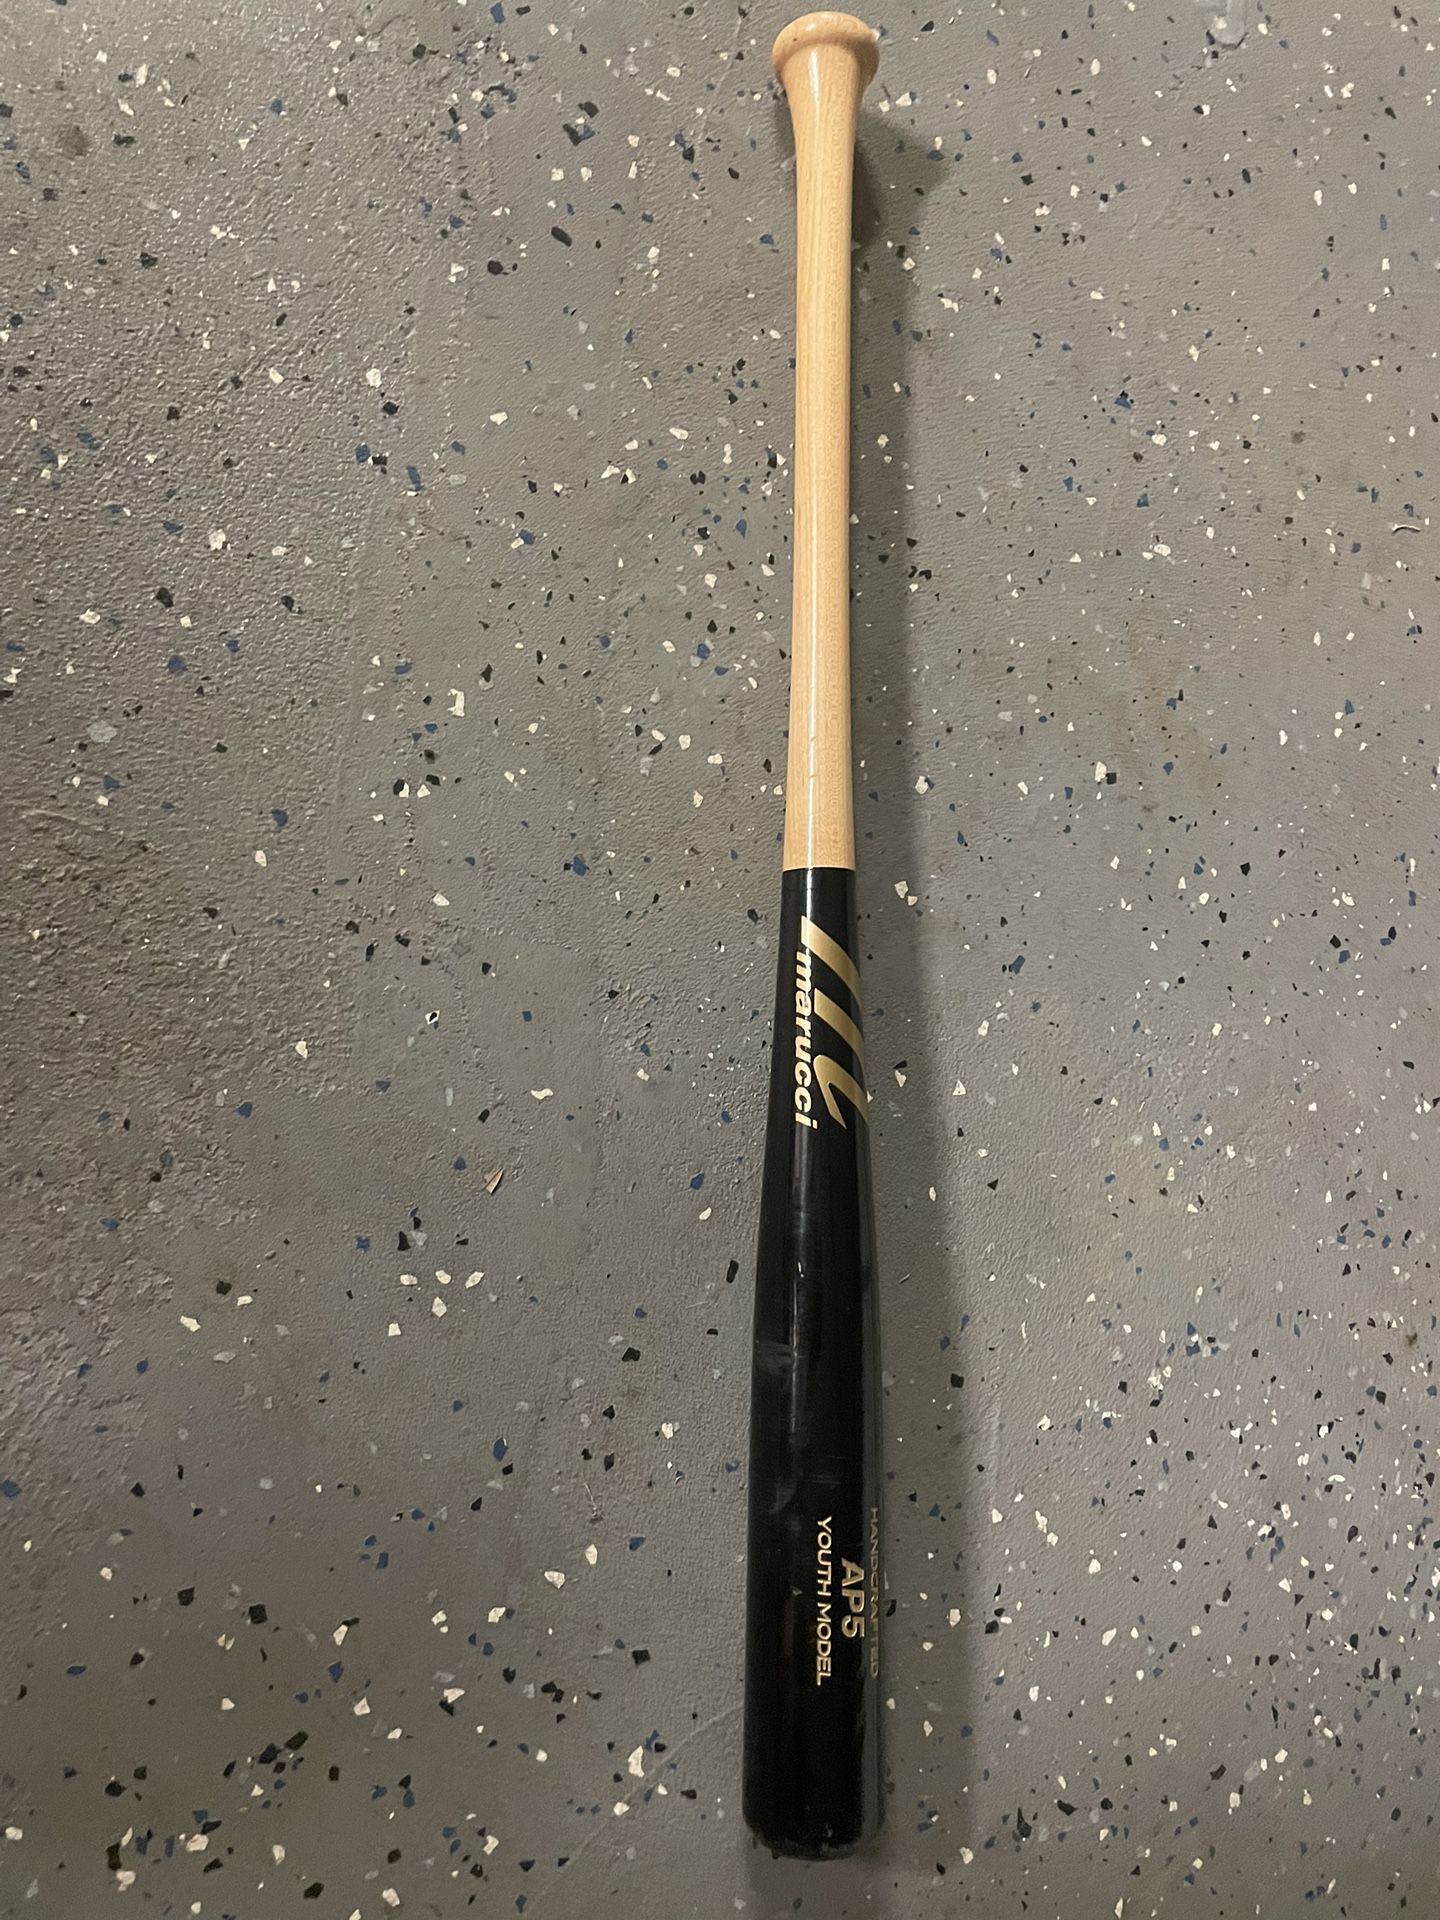 Marucci Wooden Baseball Bat 